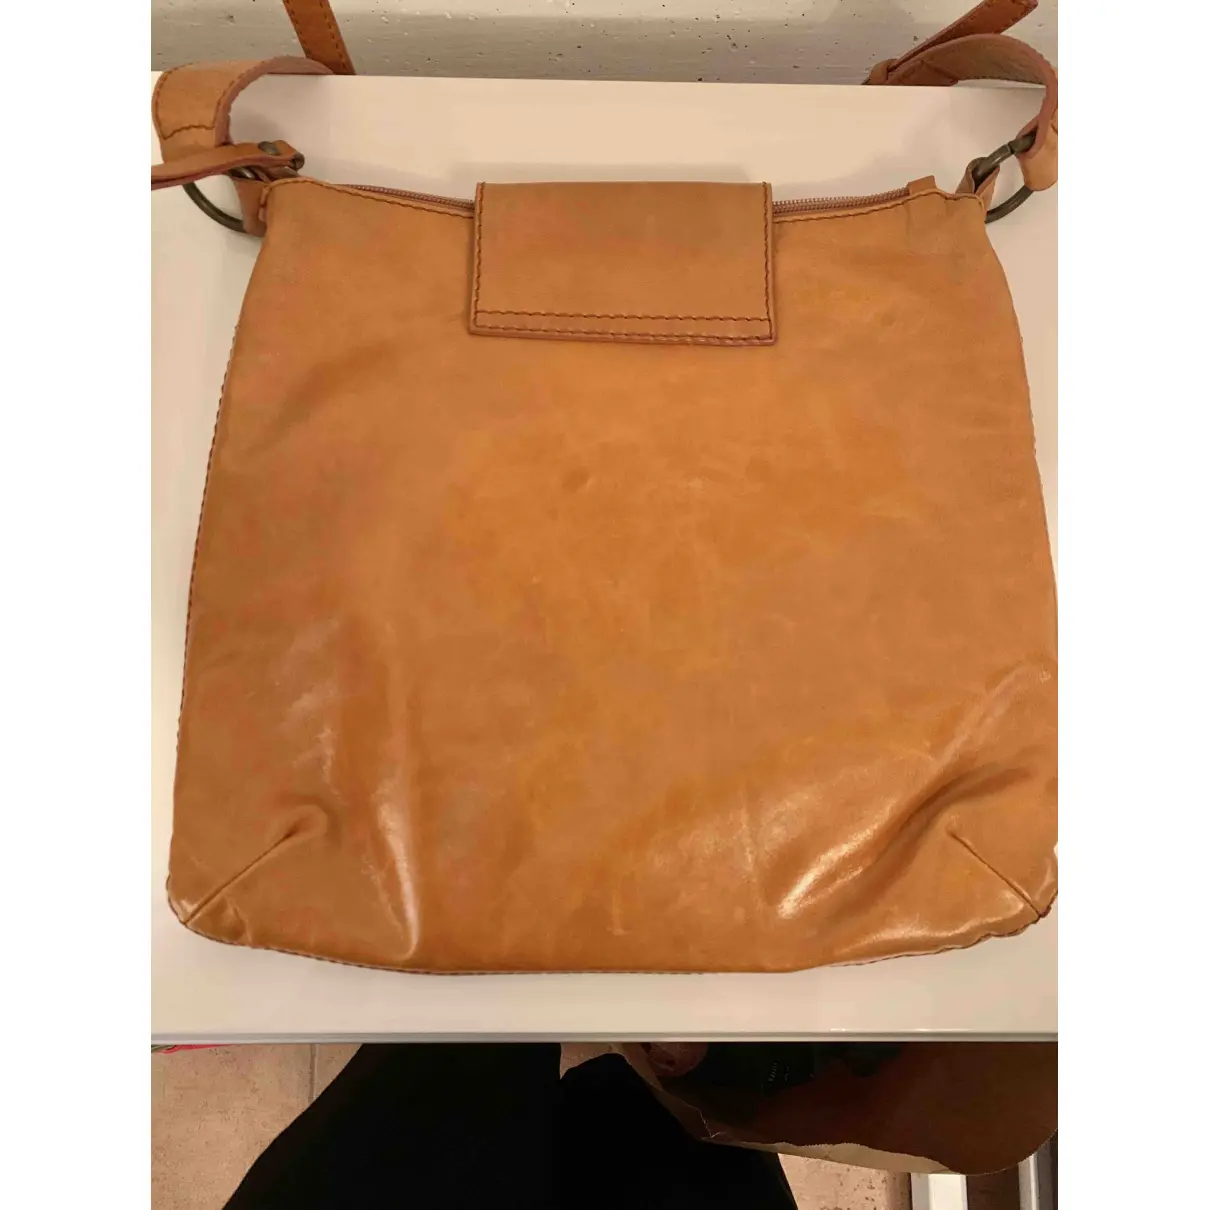 Buy Coccinelle Leather handbag online - Vintage